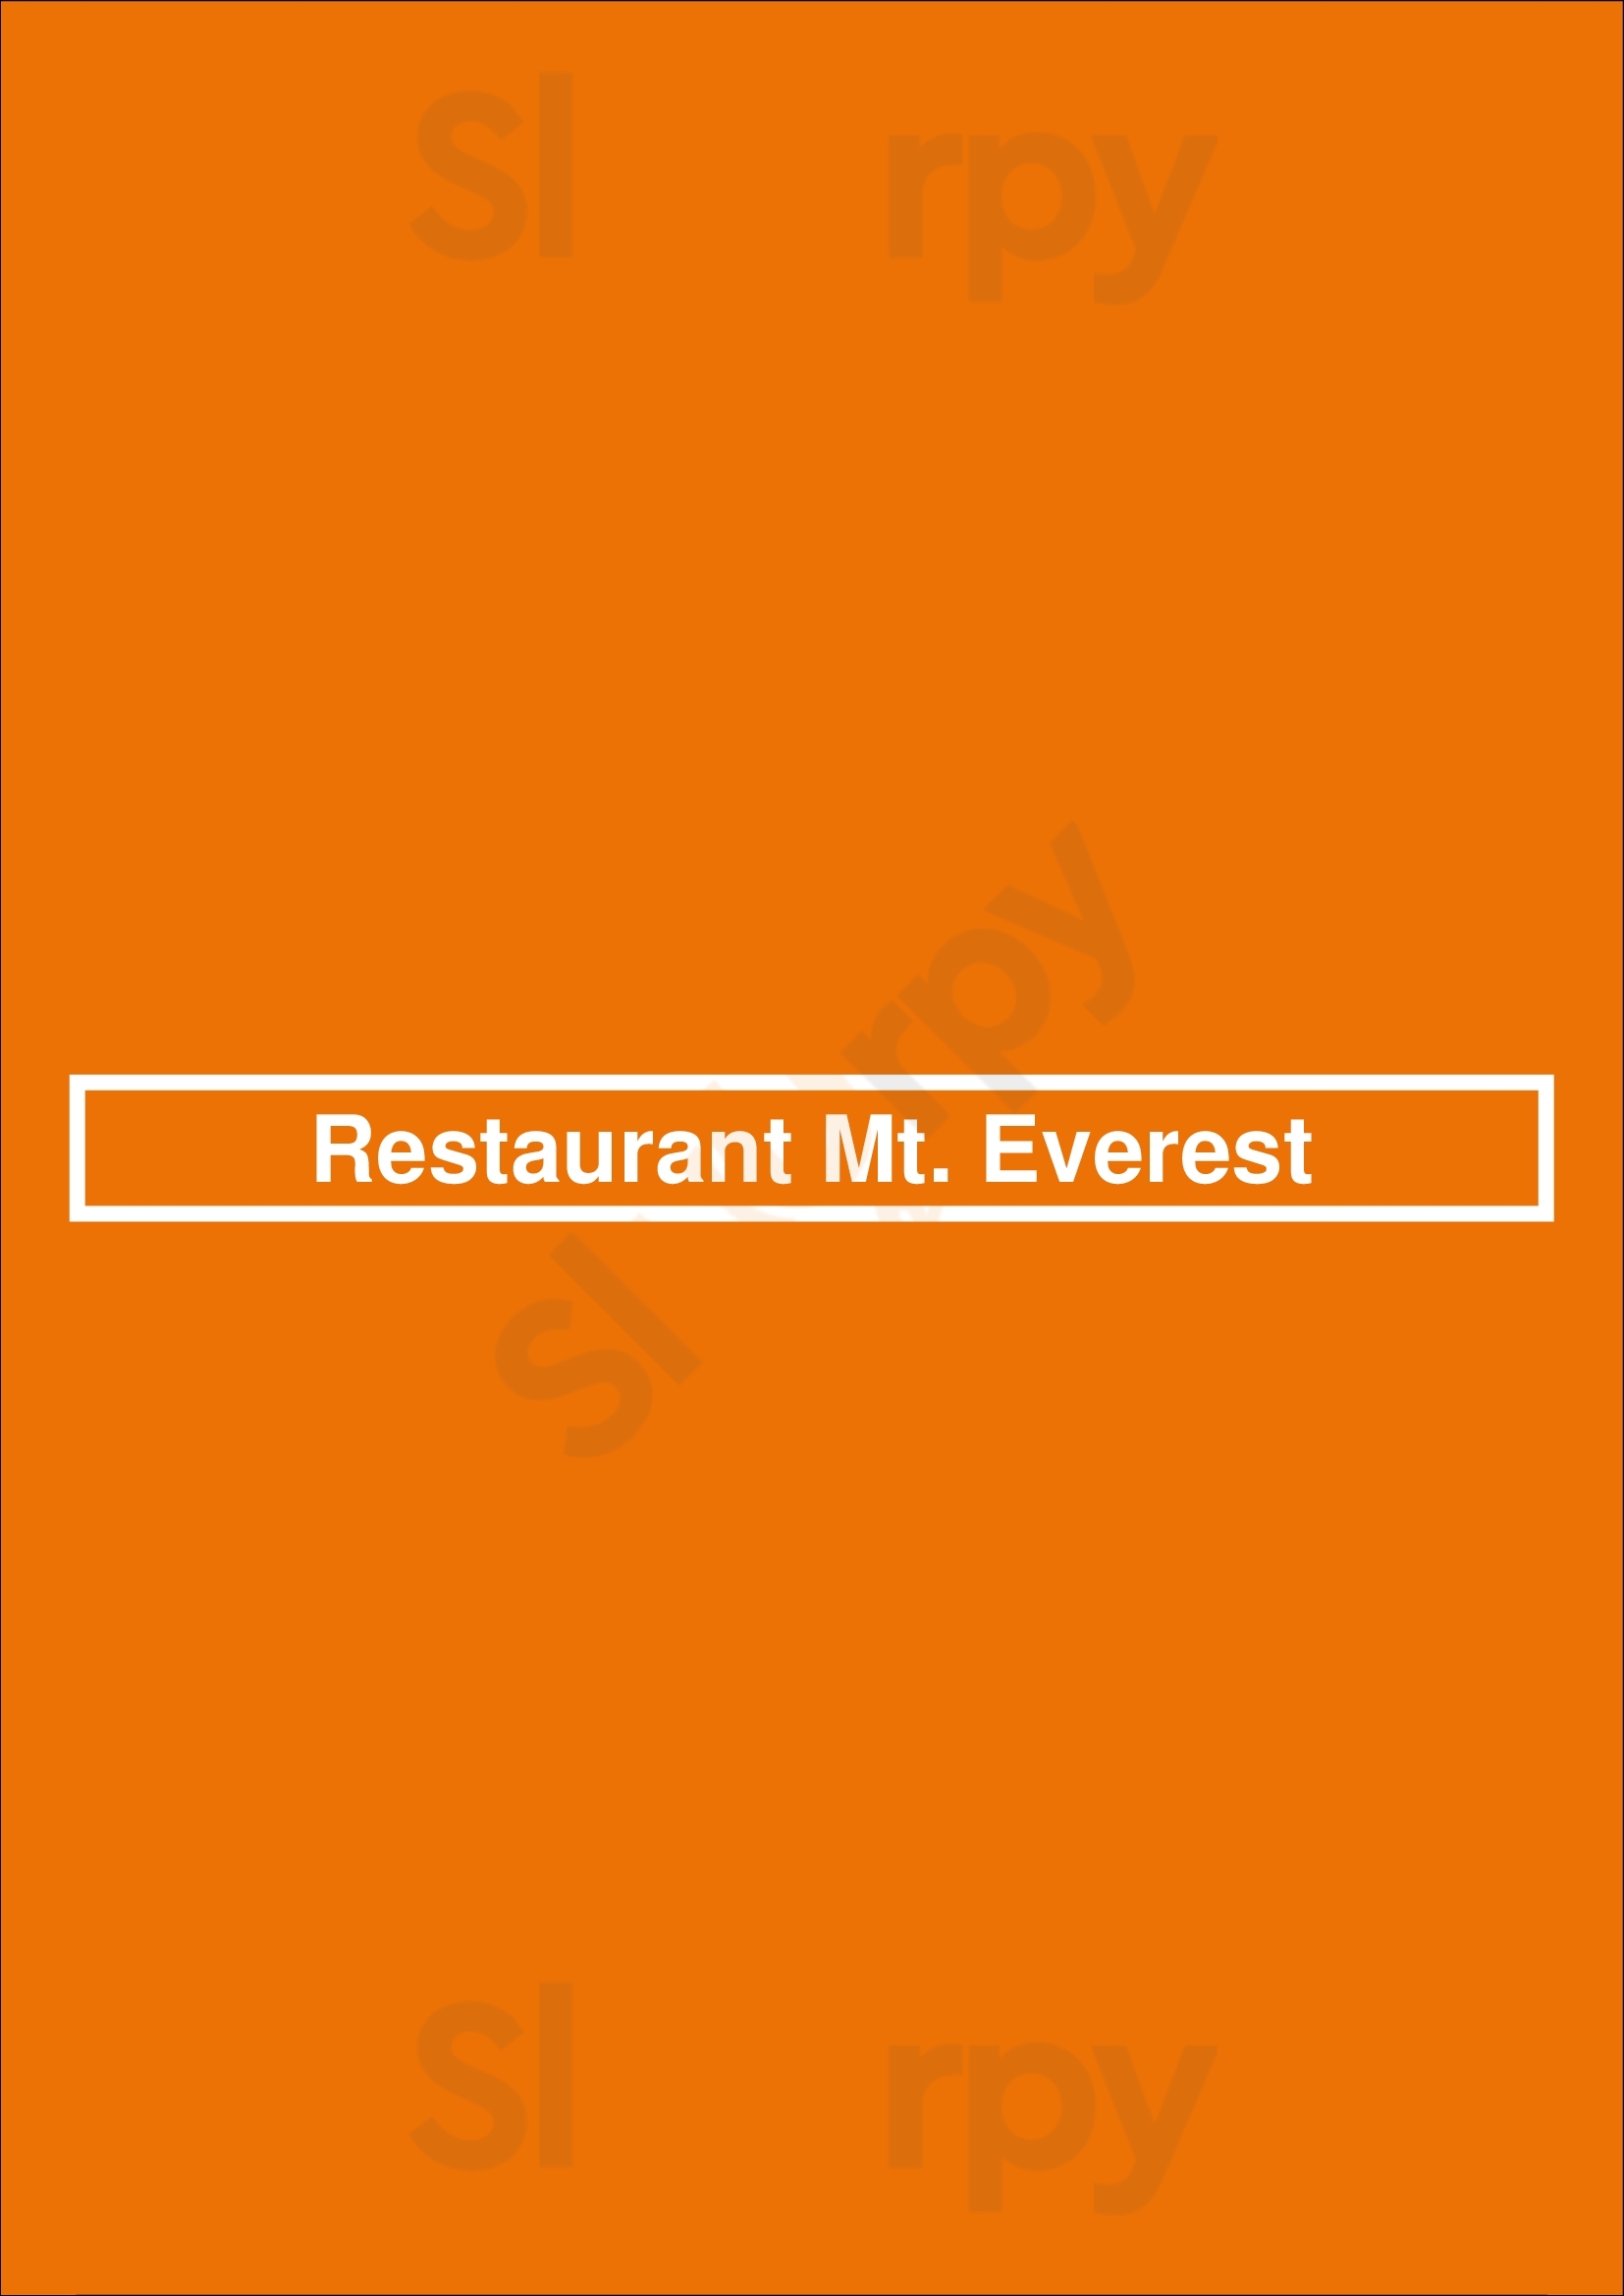 Restaurant Mt. Everest Eindhoven Menu - 1